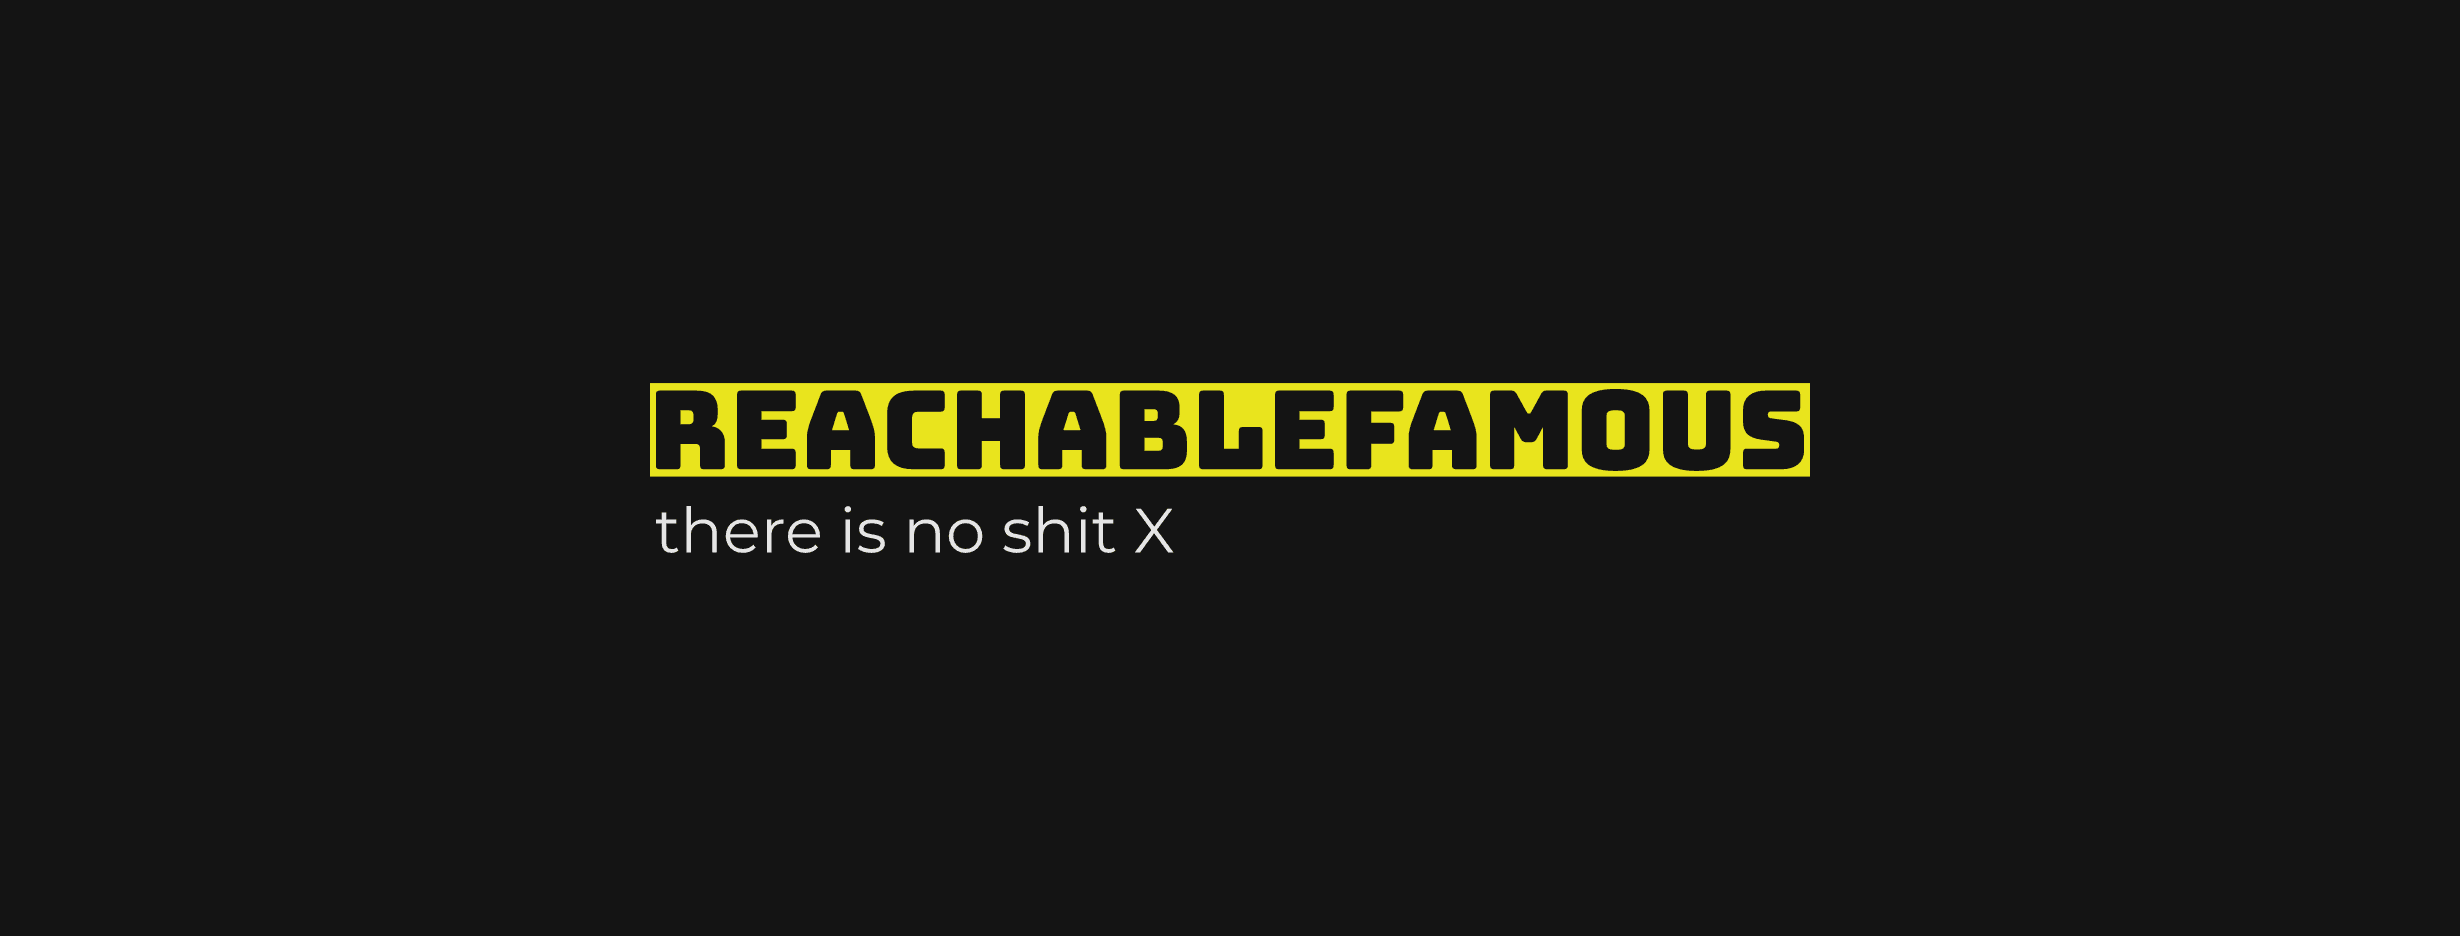 ReachableFamous banner